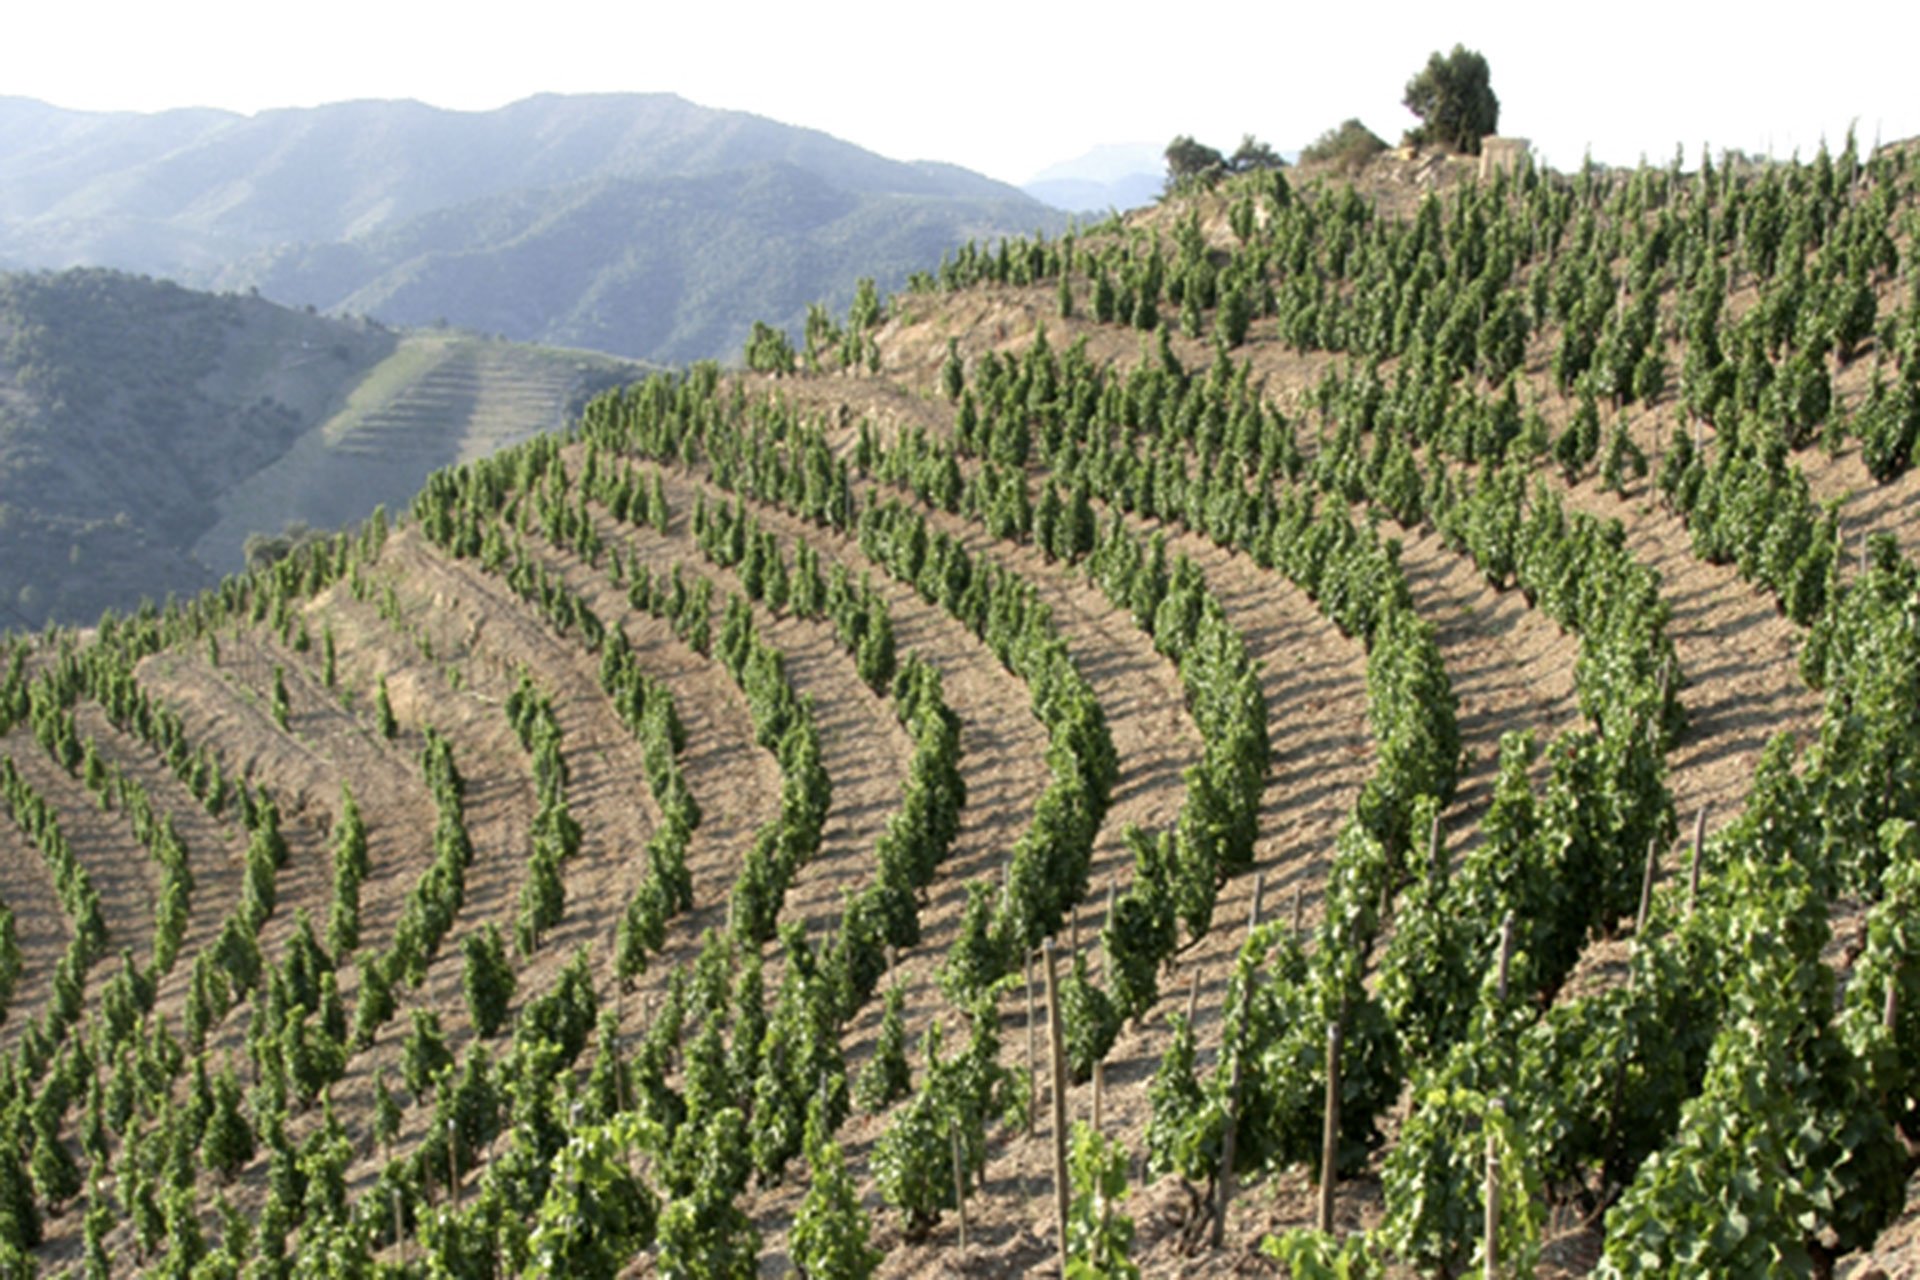 Uralte Rebstöcke in steilen Terrassenlagen, bepflanzt mit würzigen Rebsorten wie Garnacha oder Mencía, bilden die Basis für die unverwechselbaren Weine von Alvaro Palacios.